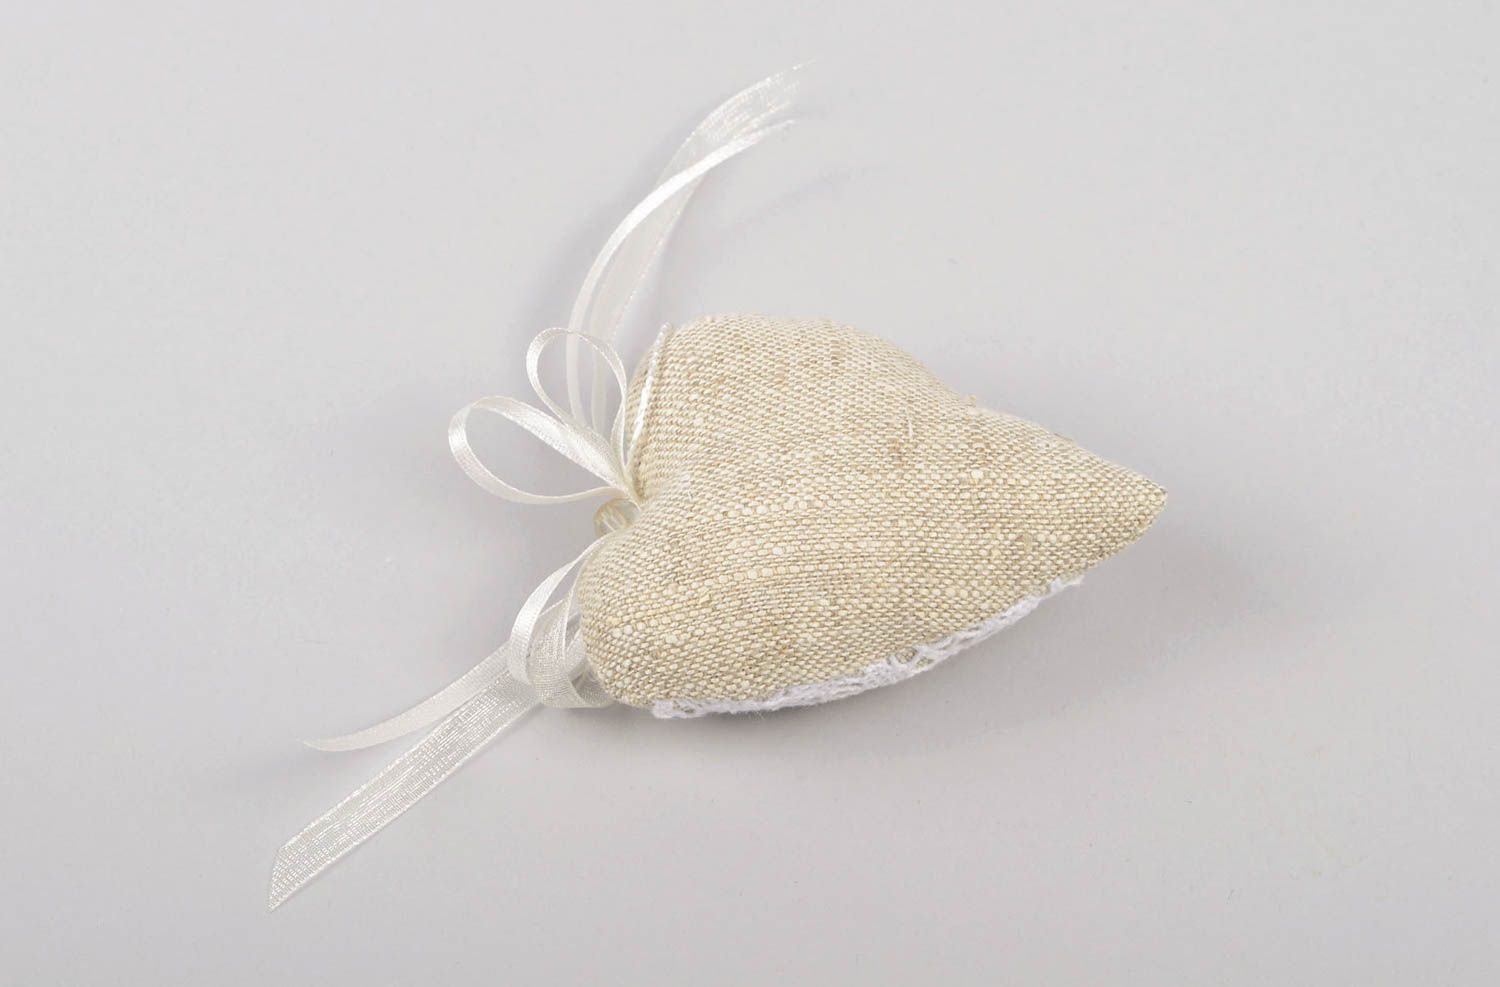 Plüsch Herz handmade Deko aus Naturmaterialien originell romantische Geschenke foto 2